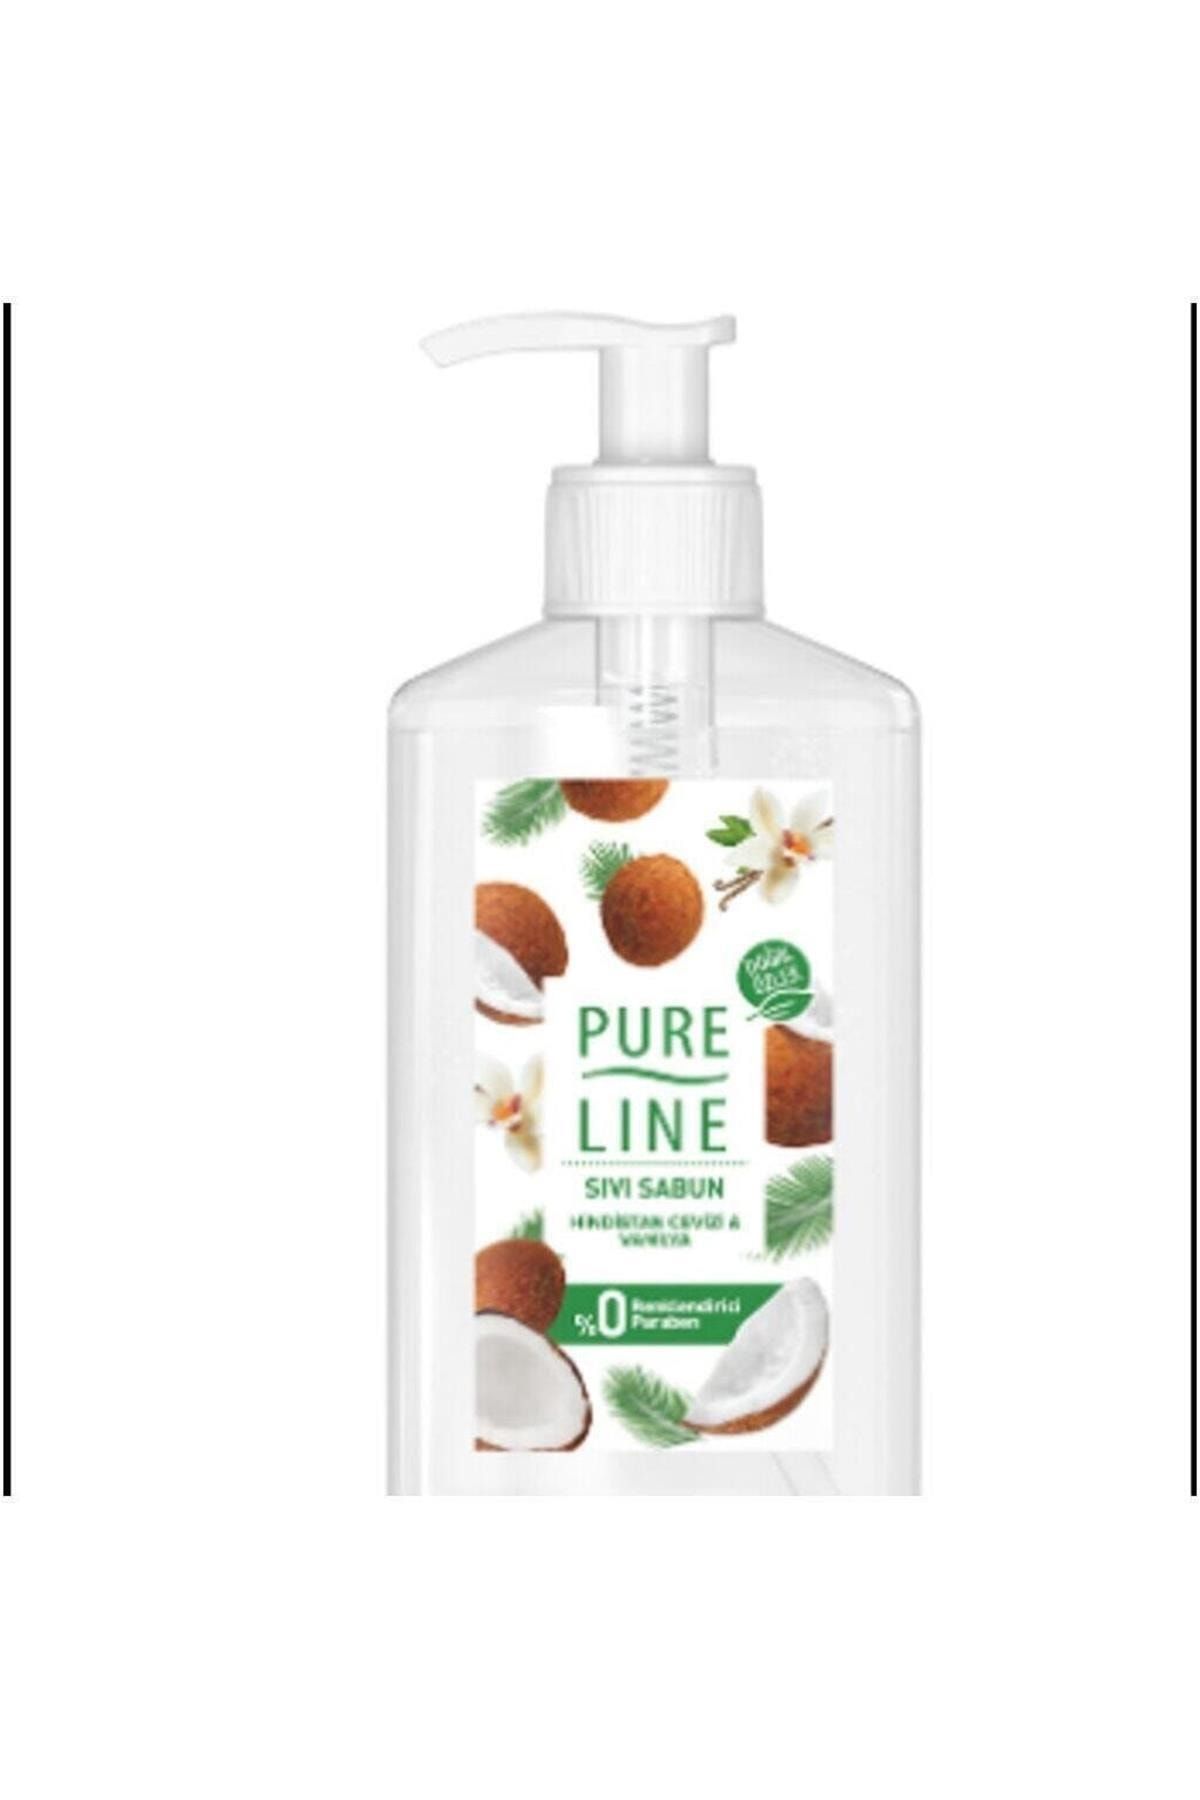 Pure Line Doğal Özler Sıvı Sabun Hindistan Cevizi & Vanilya 280 ml